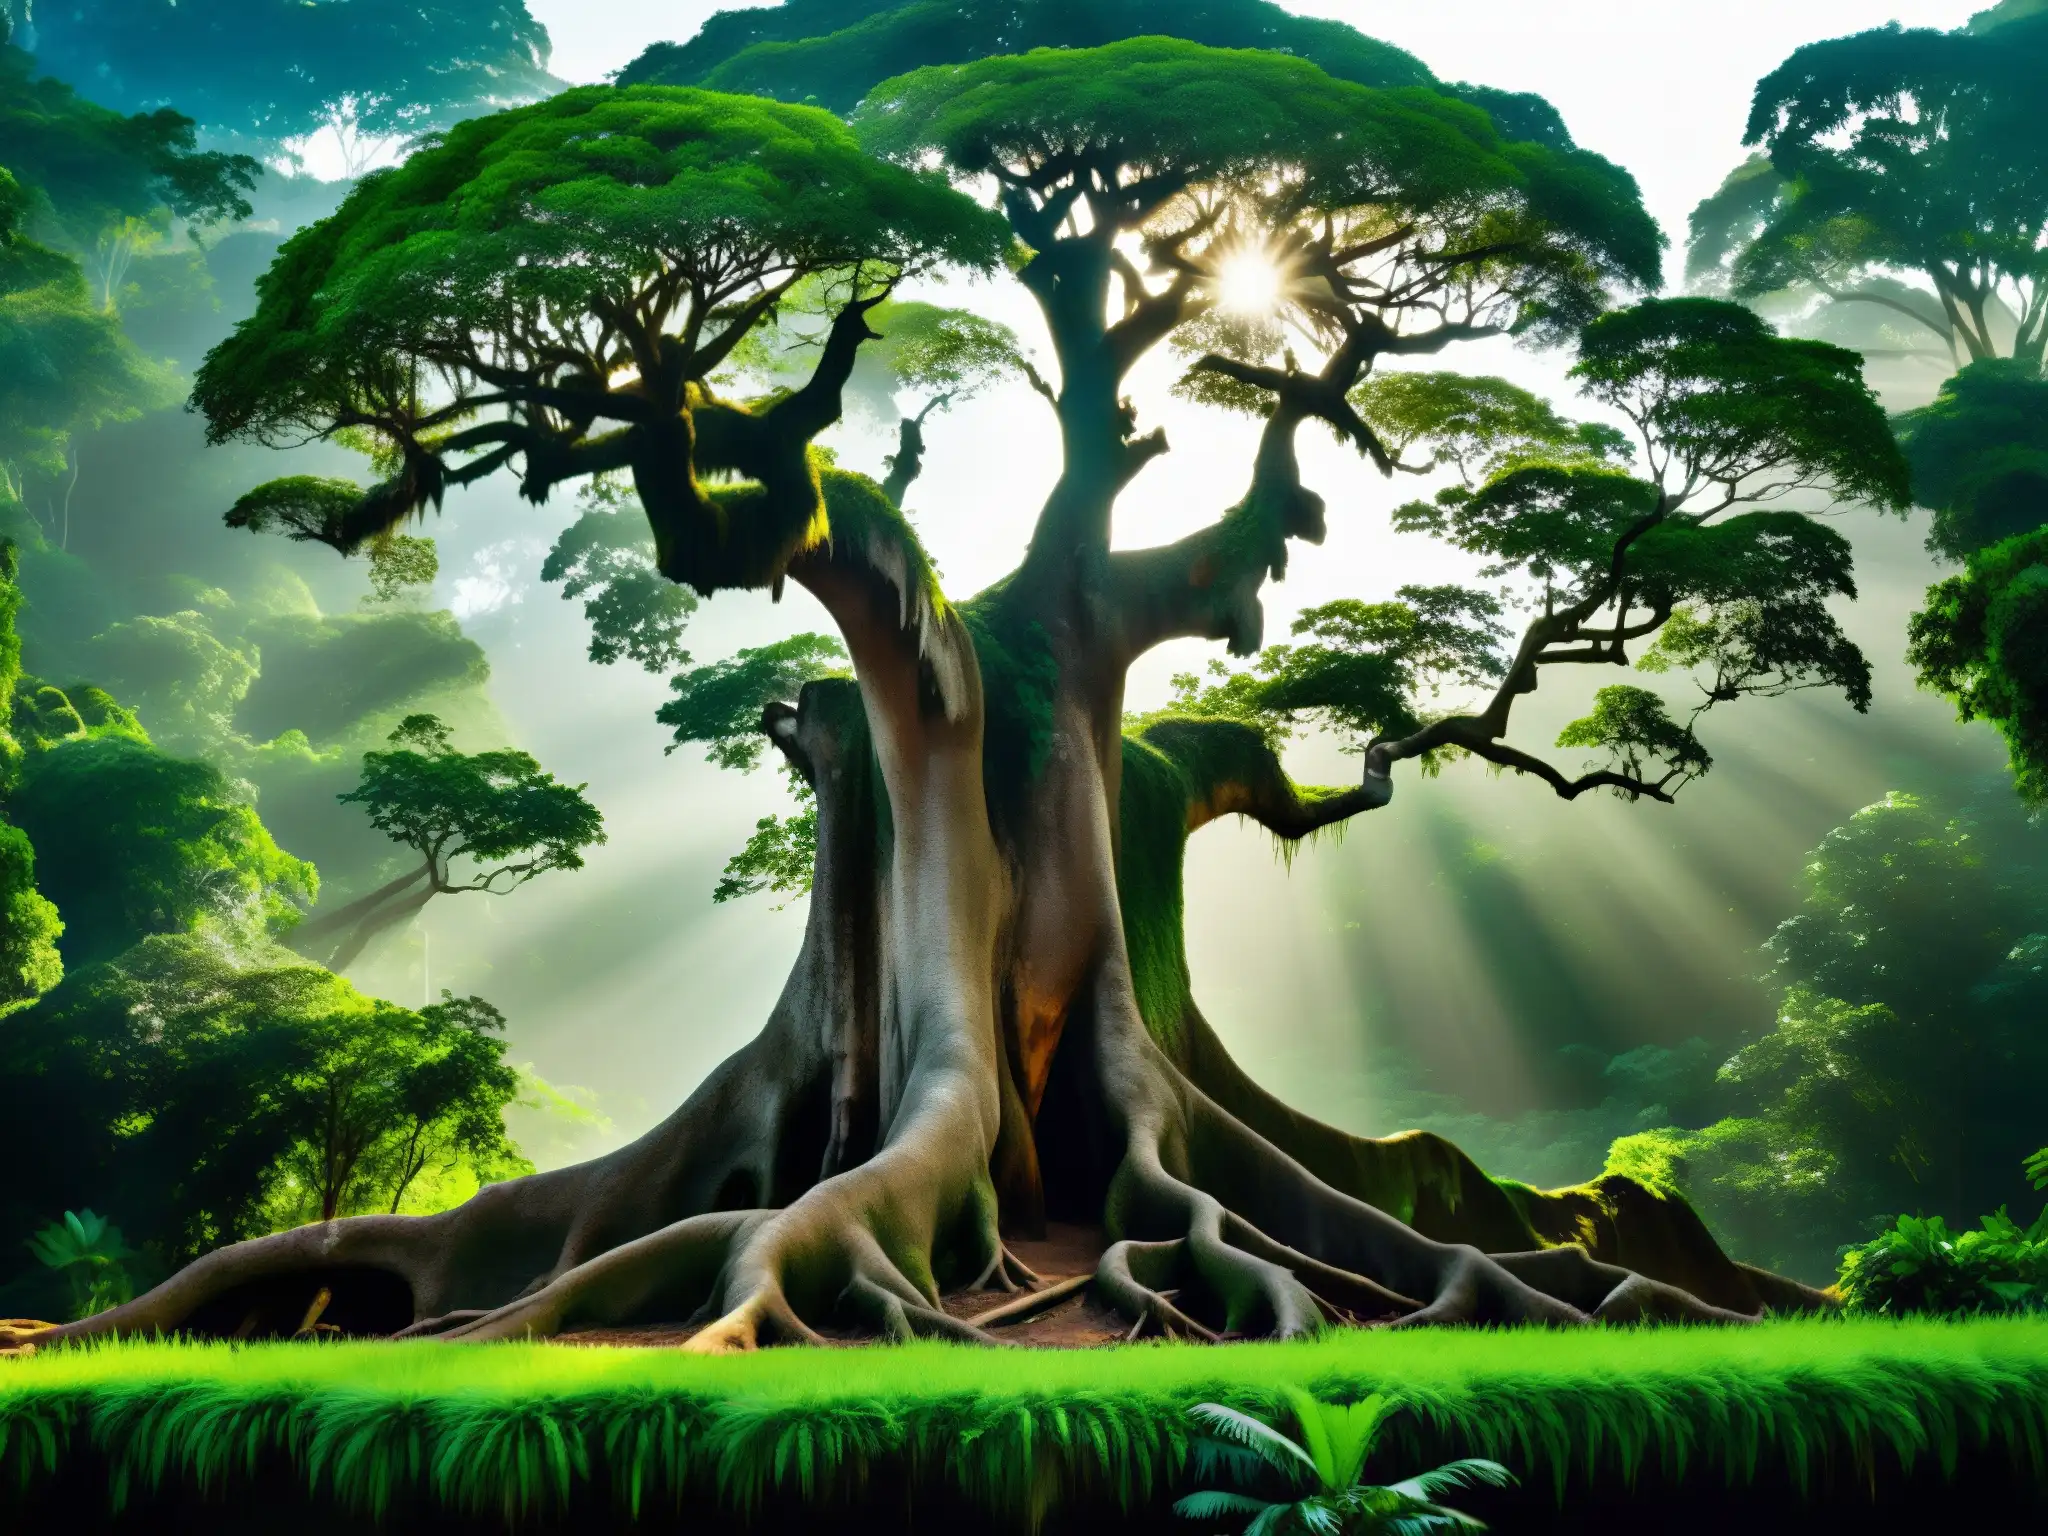 Un majestuoso árbol ceiba en la densa selva amazónica, sus raíces forman una red en el suelo